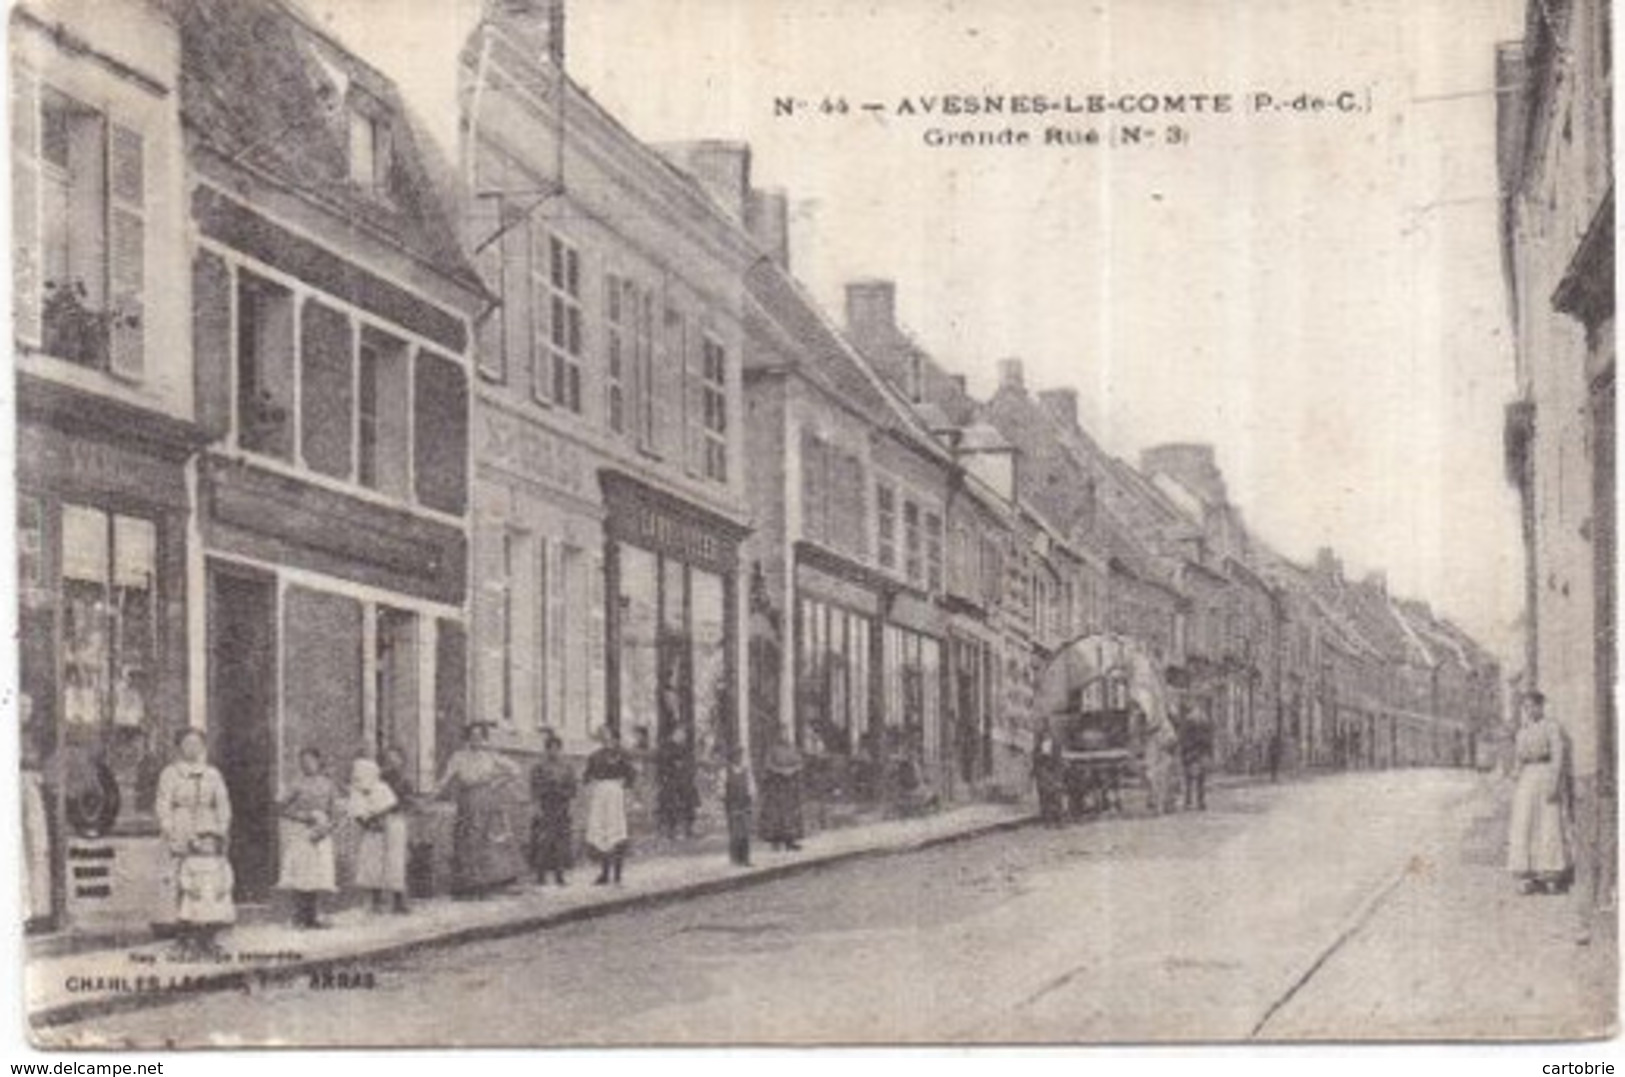 Dépt 62 - AVESNES-LE-COMTE - Grande Rue (N° 3) - Animée - Avesnes Le Comte